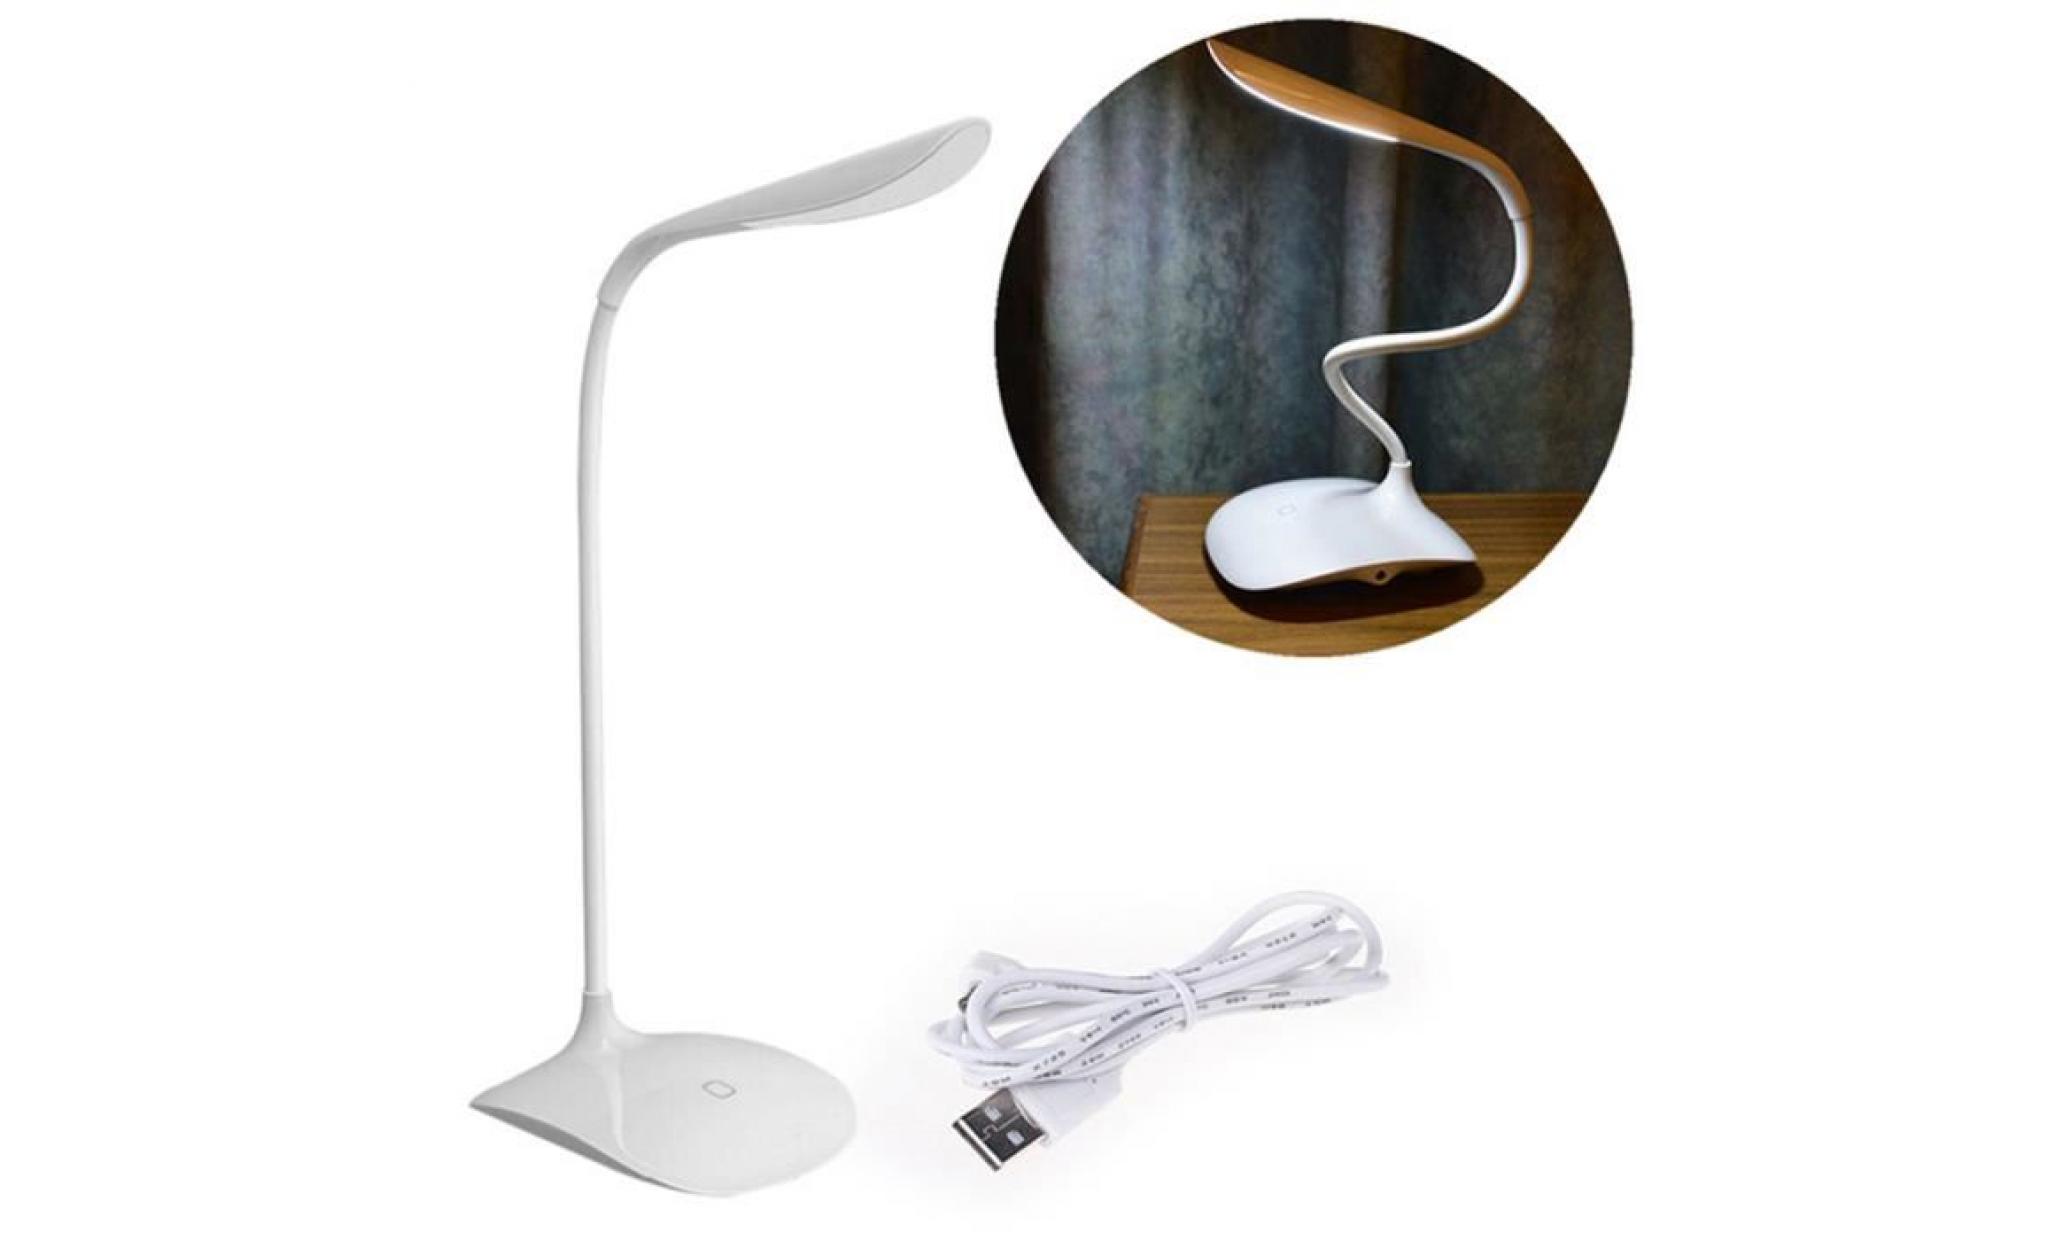 Dimmable LED Lampe de Bureau,Lampe de Table (600LUMEN, Touch Control,3-Dimmer Level,bras flexible,Noir) [Classe énergétique A+++]